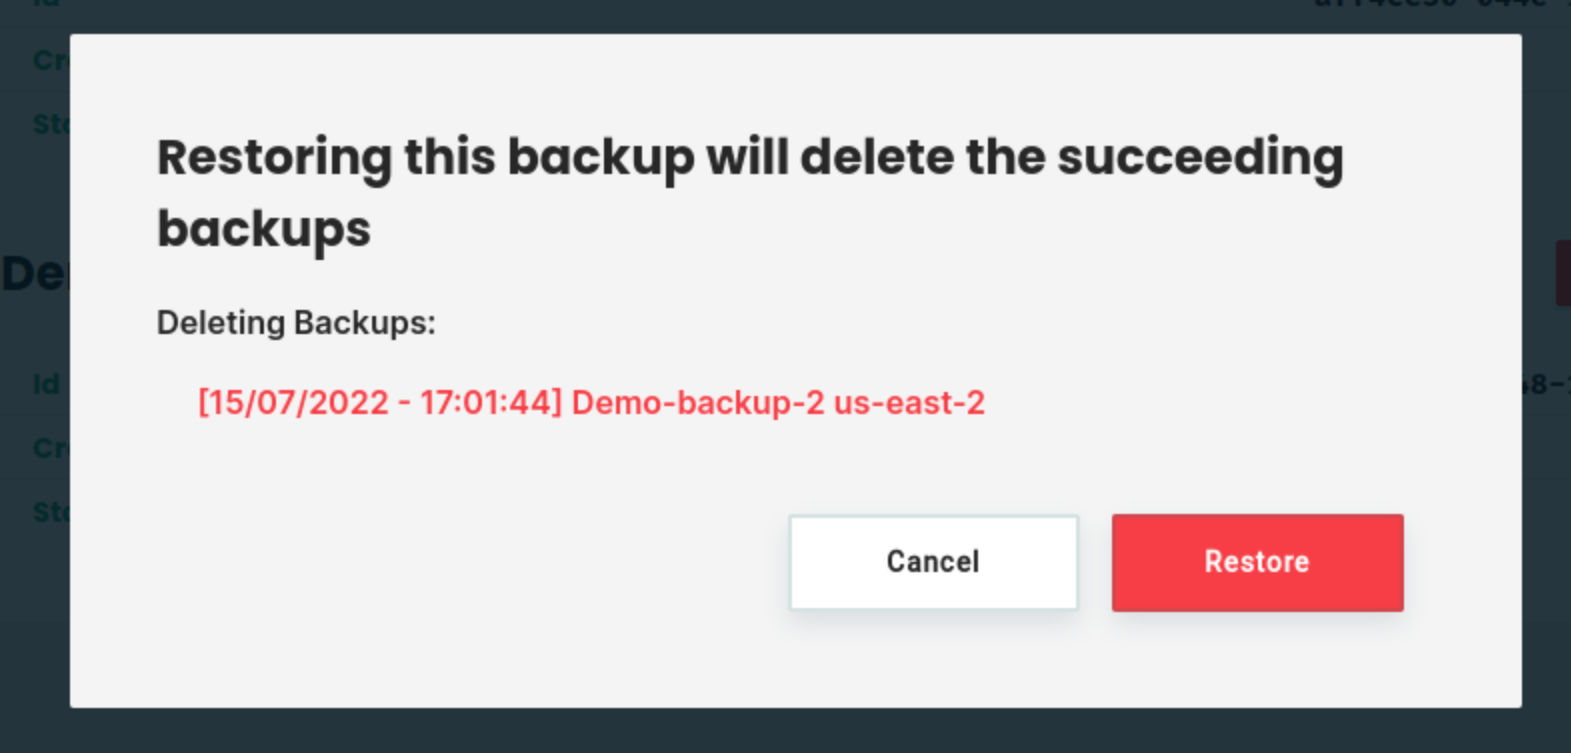 Delete succeeding backups